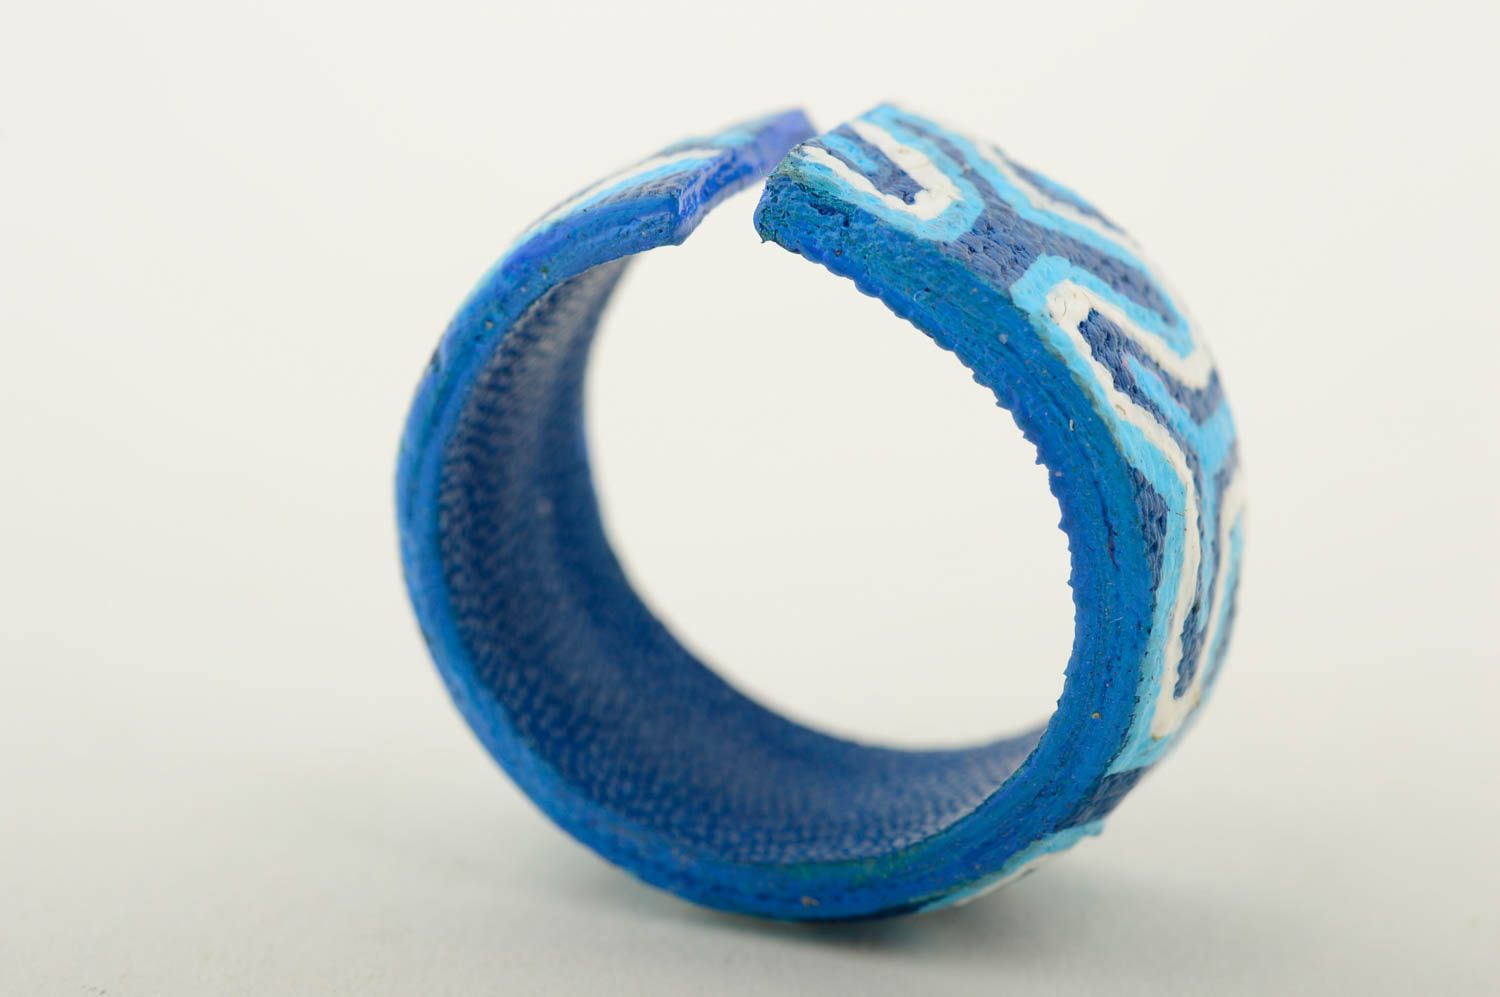 Кольцо ручной работы кожаный аксессуар голубой оригинальное кольцо с росписью фото 5